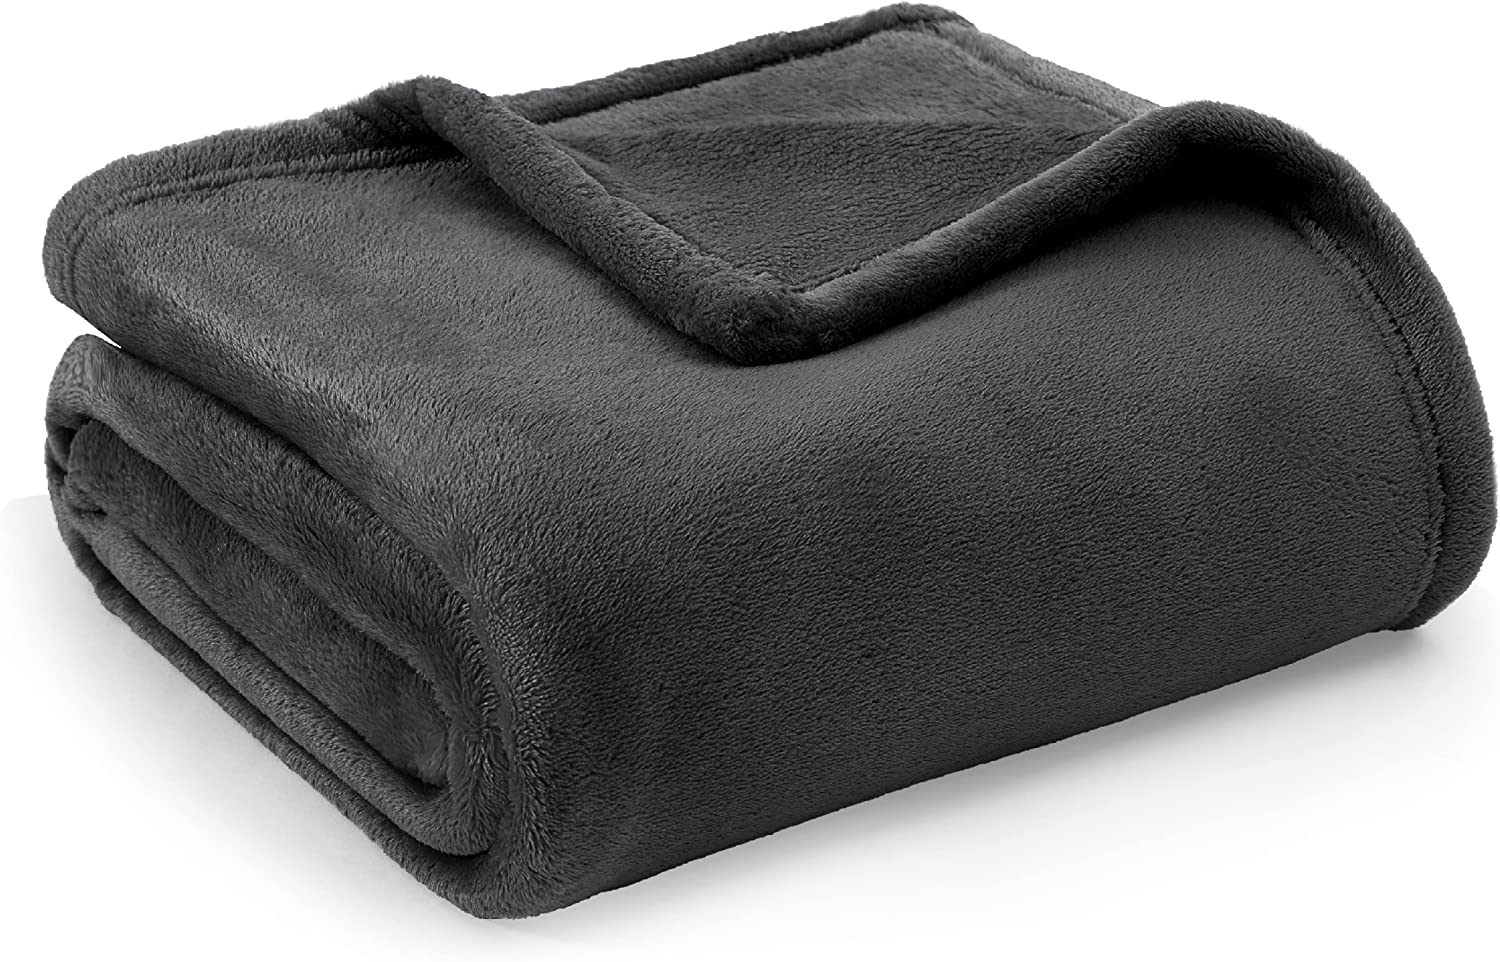 Bedsure Fleece Blanket Twin Blanket Dark Grey - 300Gsm Soft Cozy Twin Blankets,60X80 inches - image 1 of 7